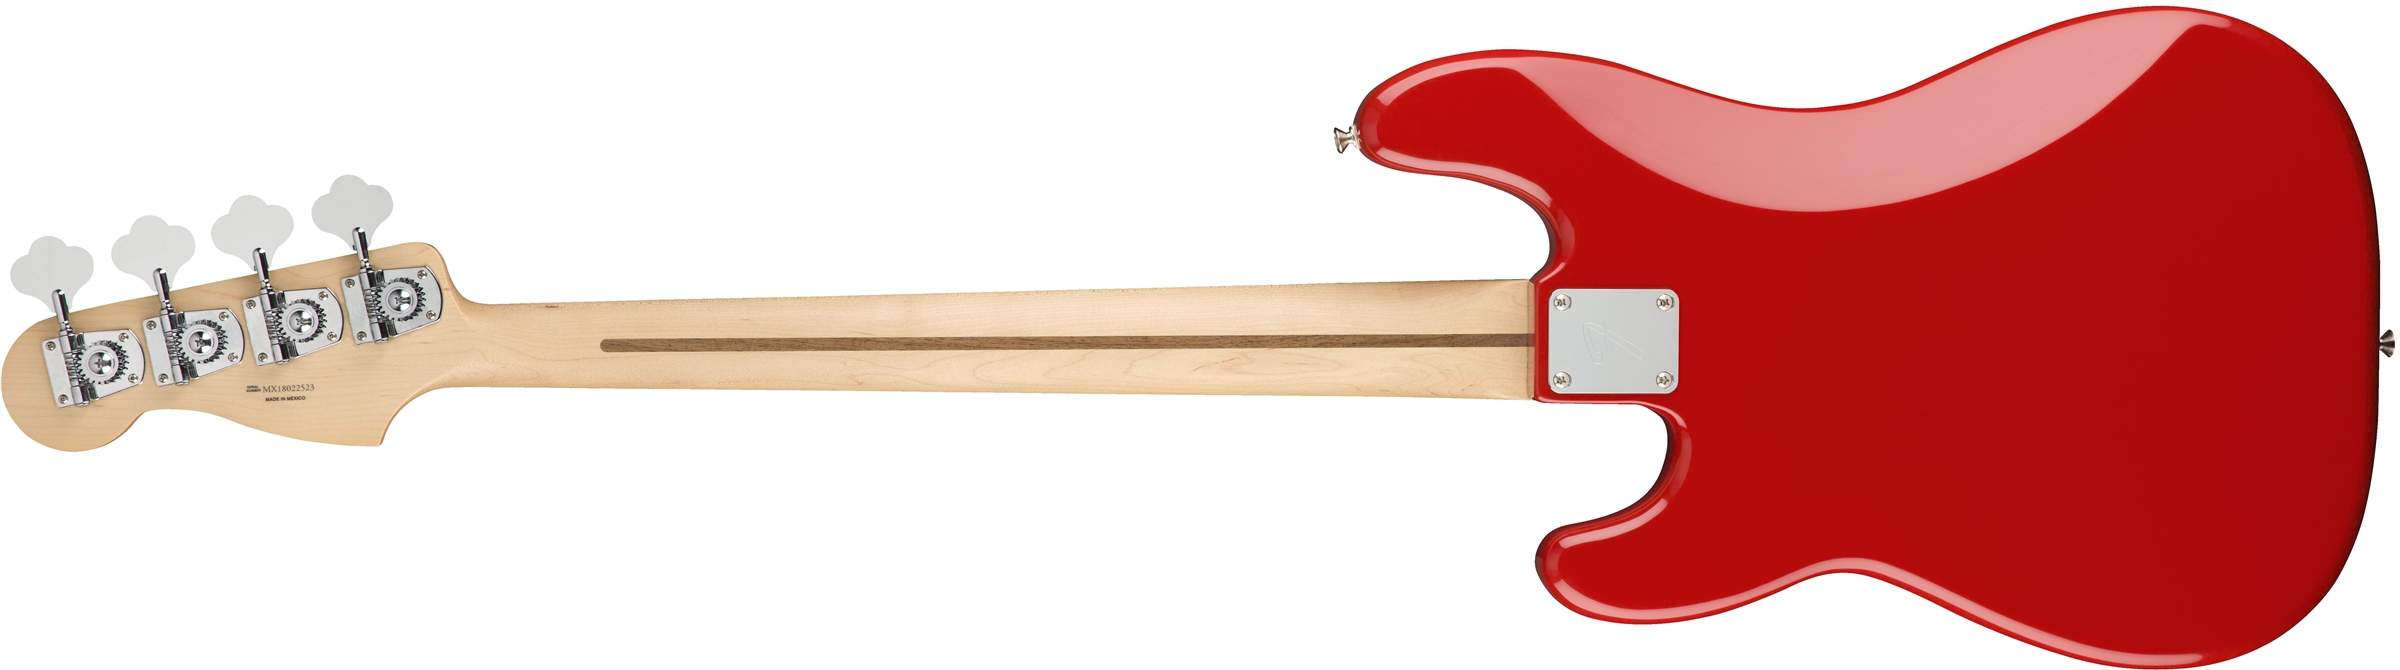 Fender Precision Bass Player Mex Pf - Sonic Red - Bajo eléctrico de cuerpo sólido - Variation 1